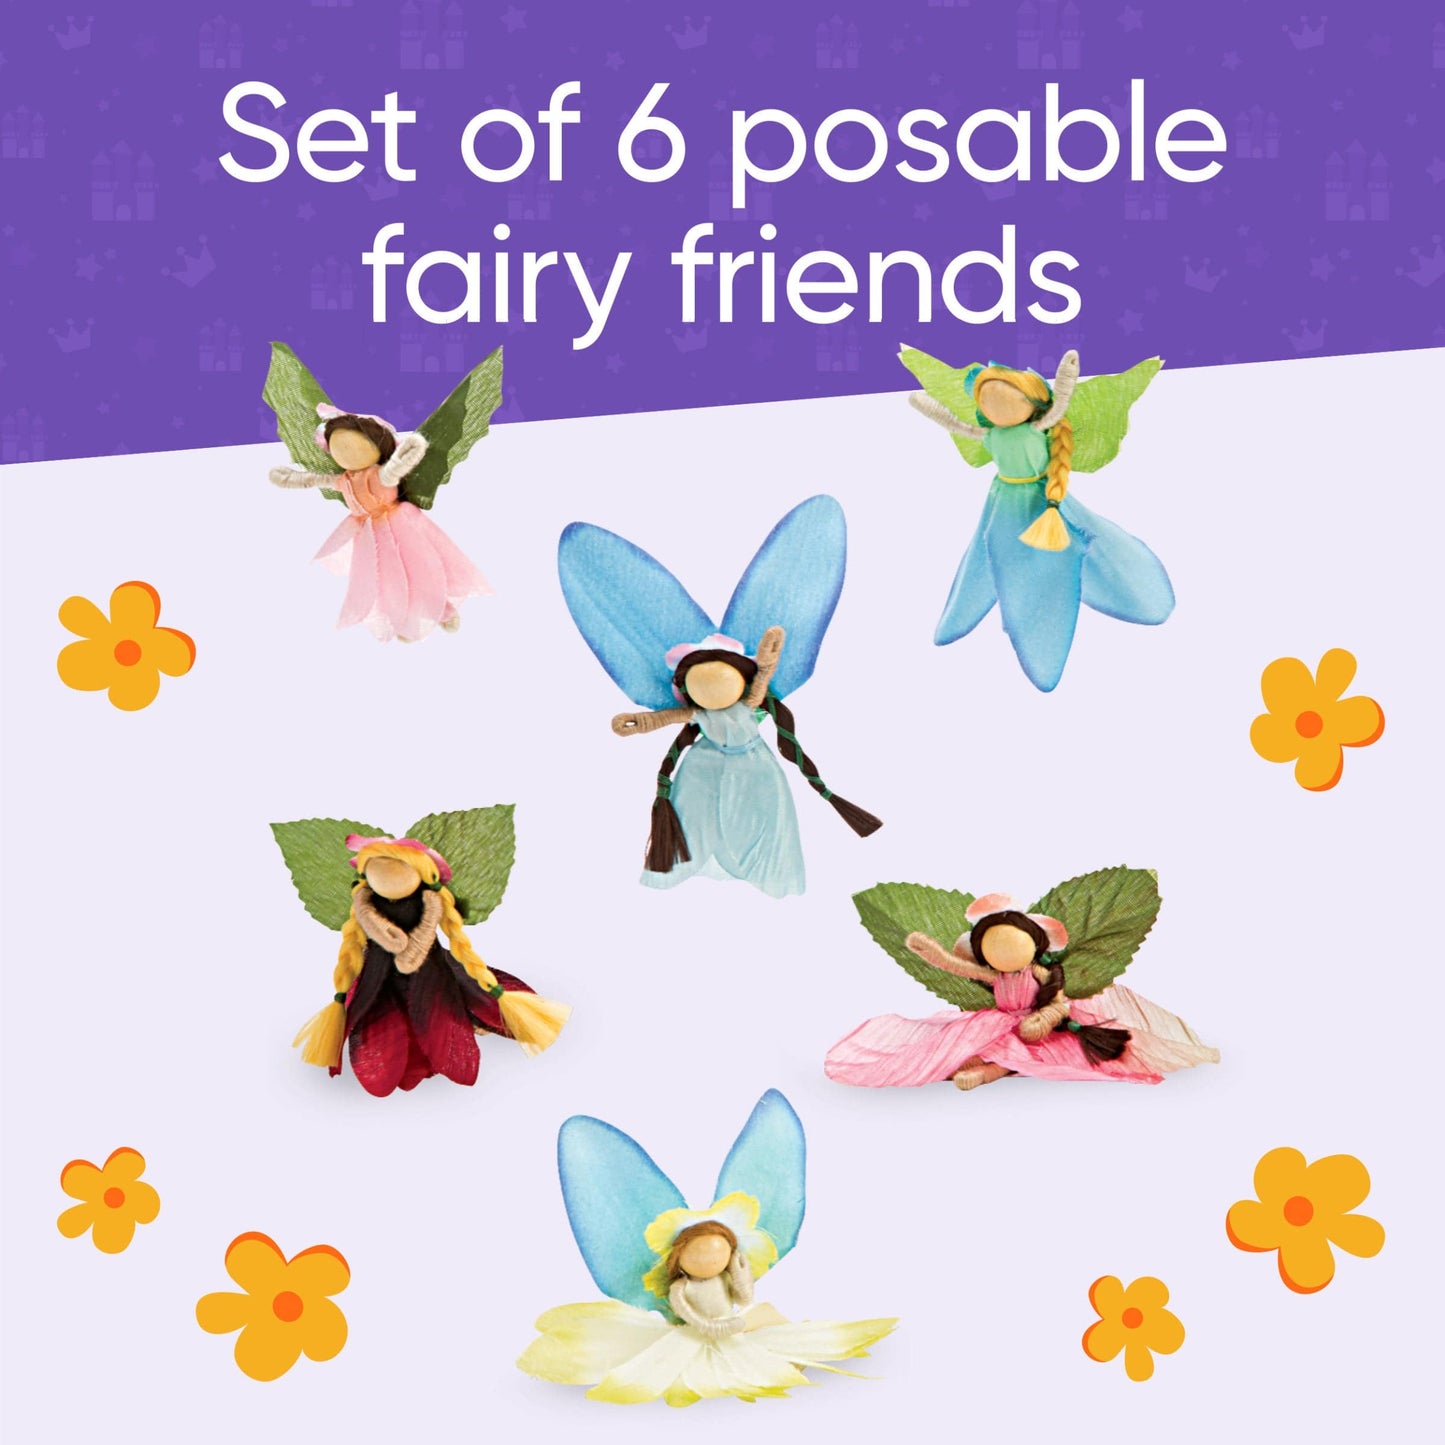 Take-Along Posable Pocket Fairies, Set of 6